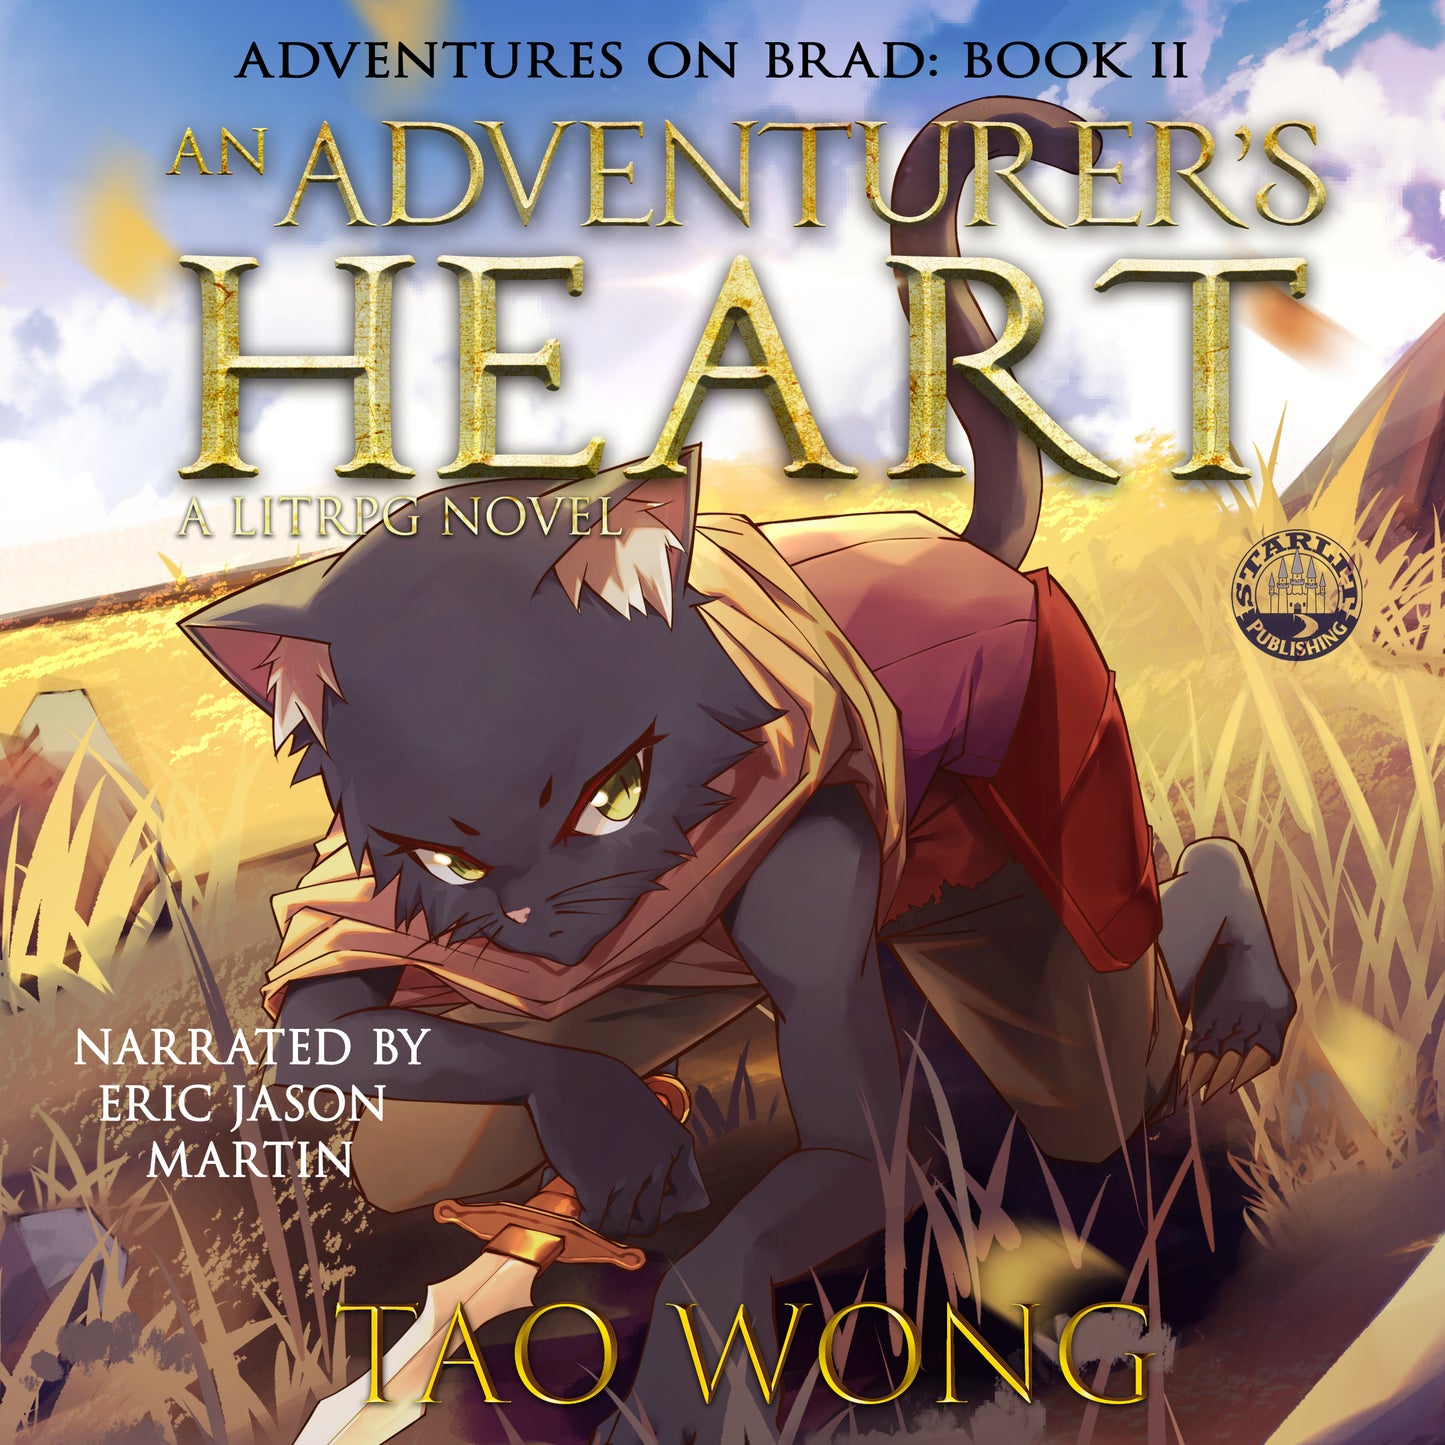 An Adventurer's Heart (Adventures on Brad #2)